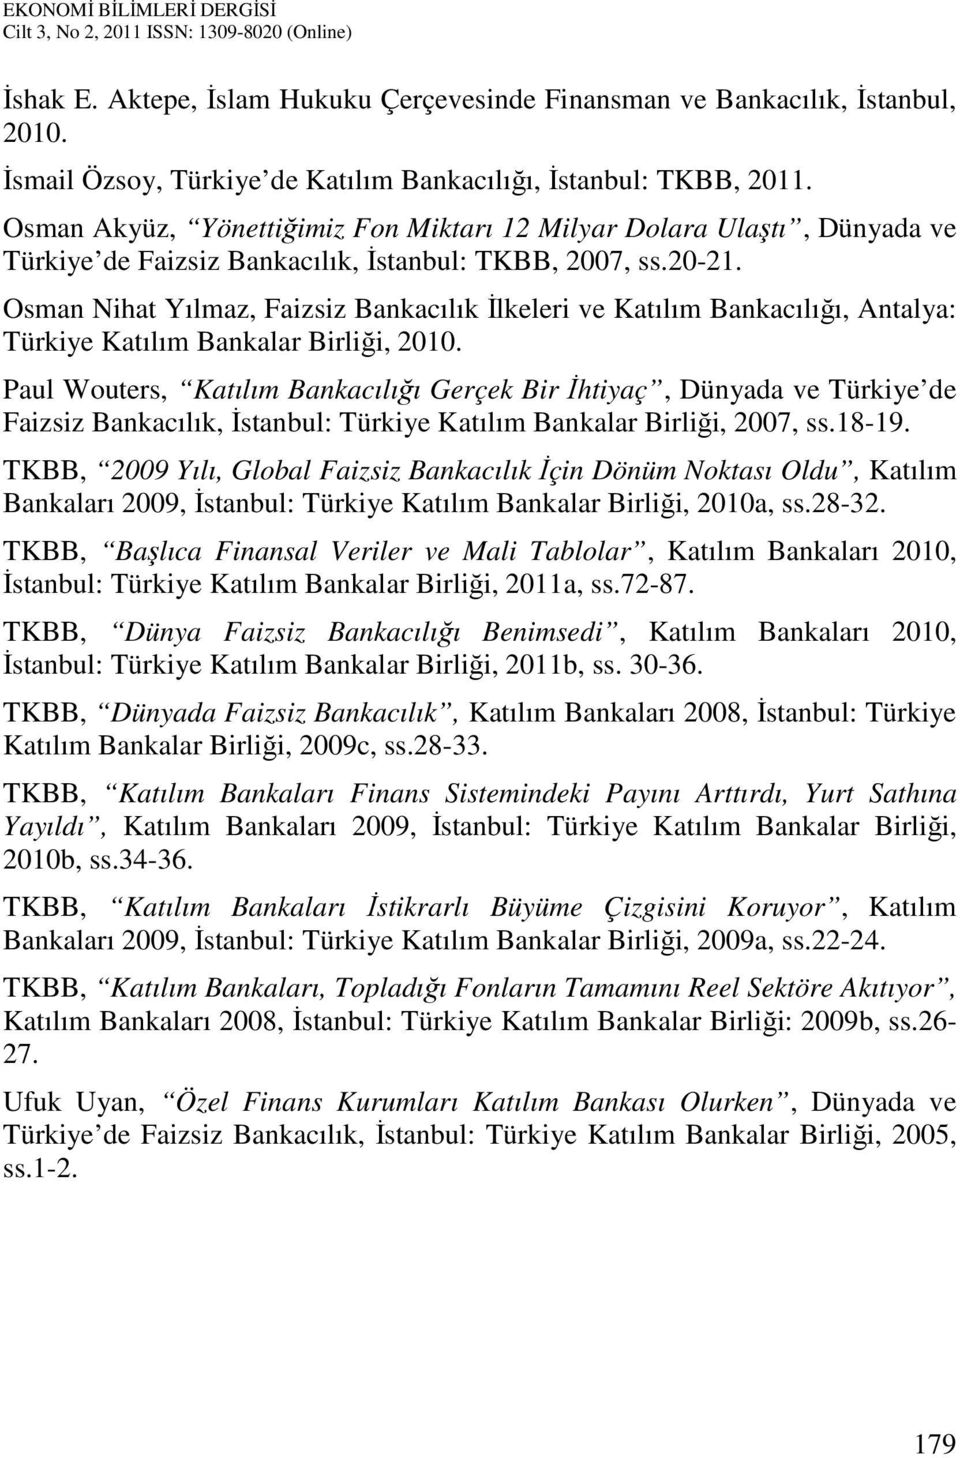 Osman Nihat Yılmaz, Faizsiz Bankacılık İlkeleri ve Katılım Bankacılığı, Antalya: Türkiye Katılım Bankalar Birliği, 2010.